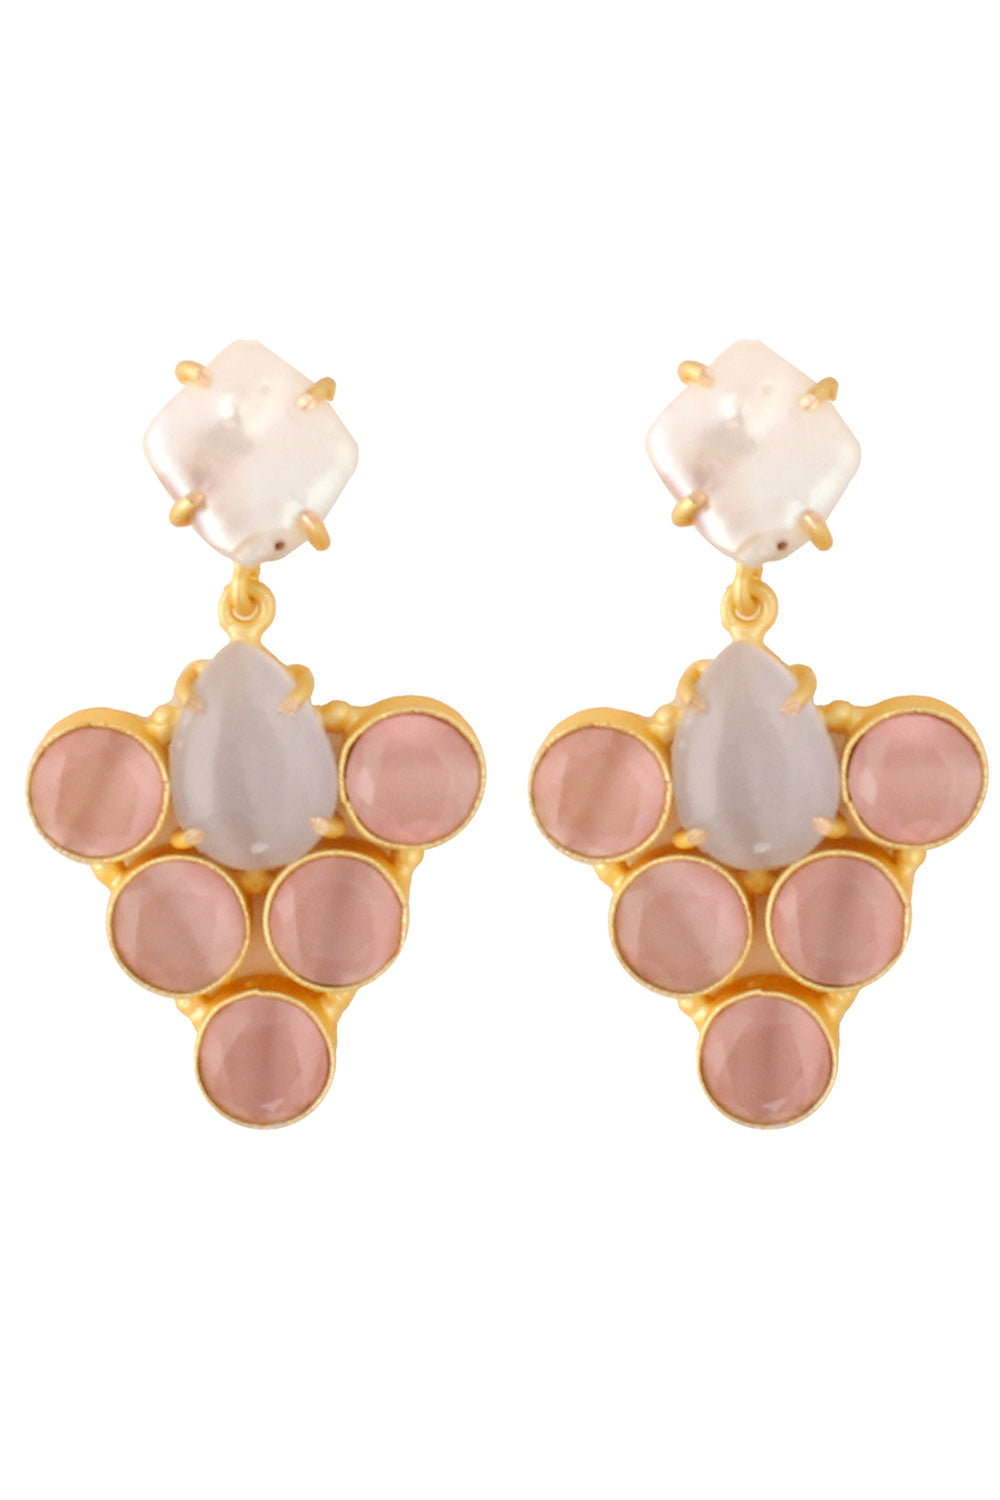 Buy Rukia Grey & Pink Monalisa Stone and Fresh Water Pearl Earrings Online